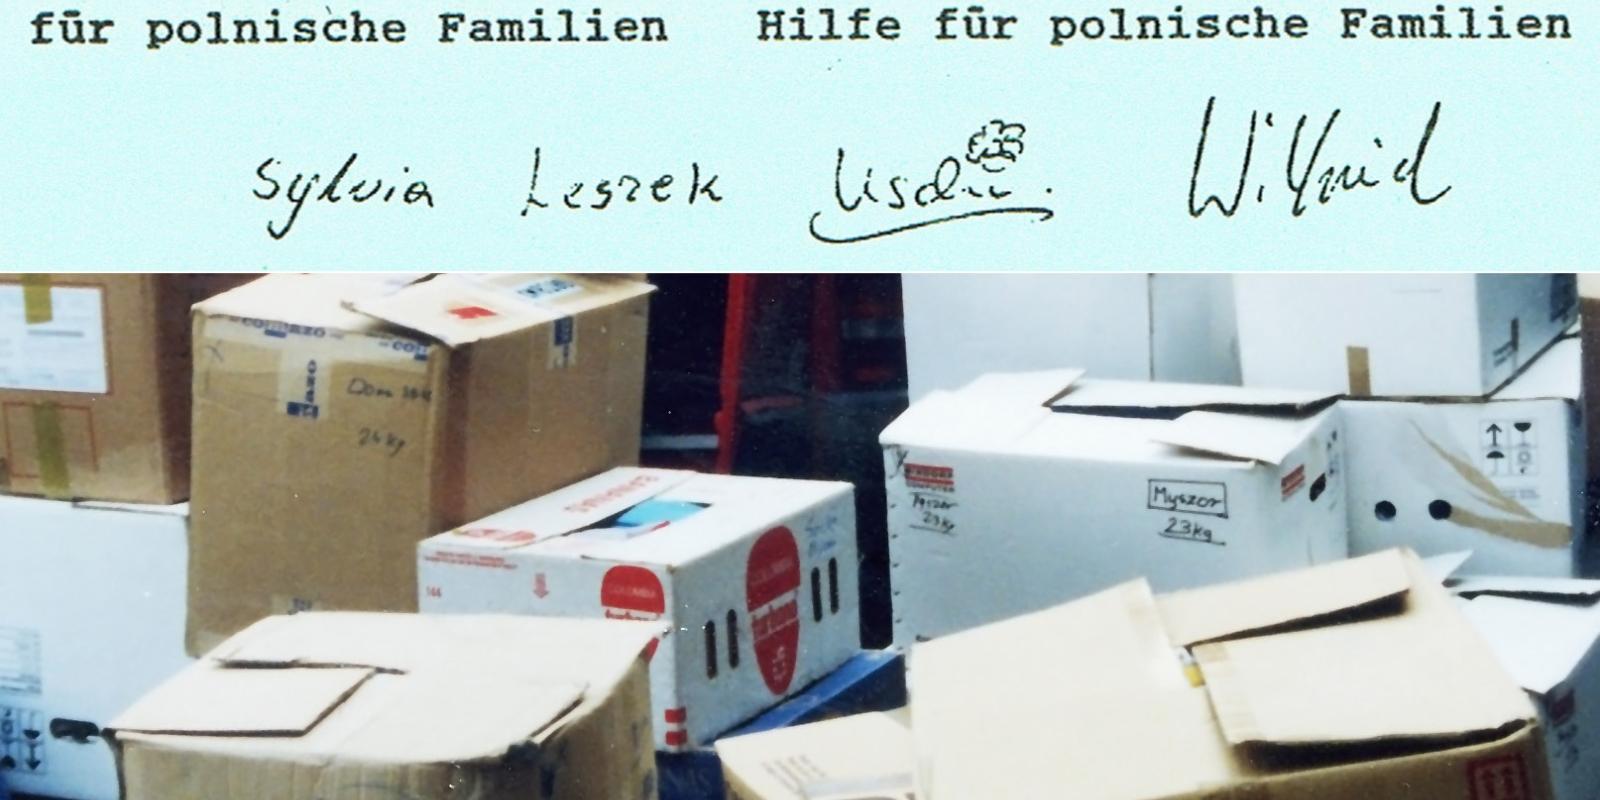 1989-06 Hilfe für polnische Familien